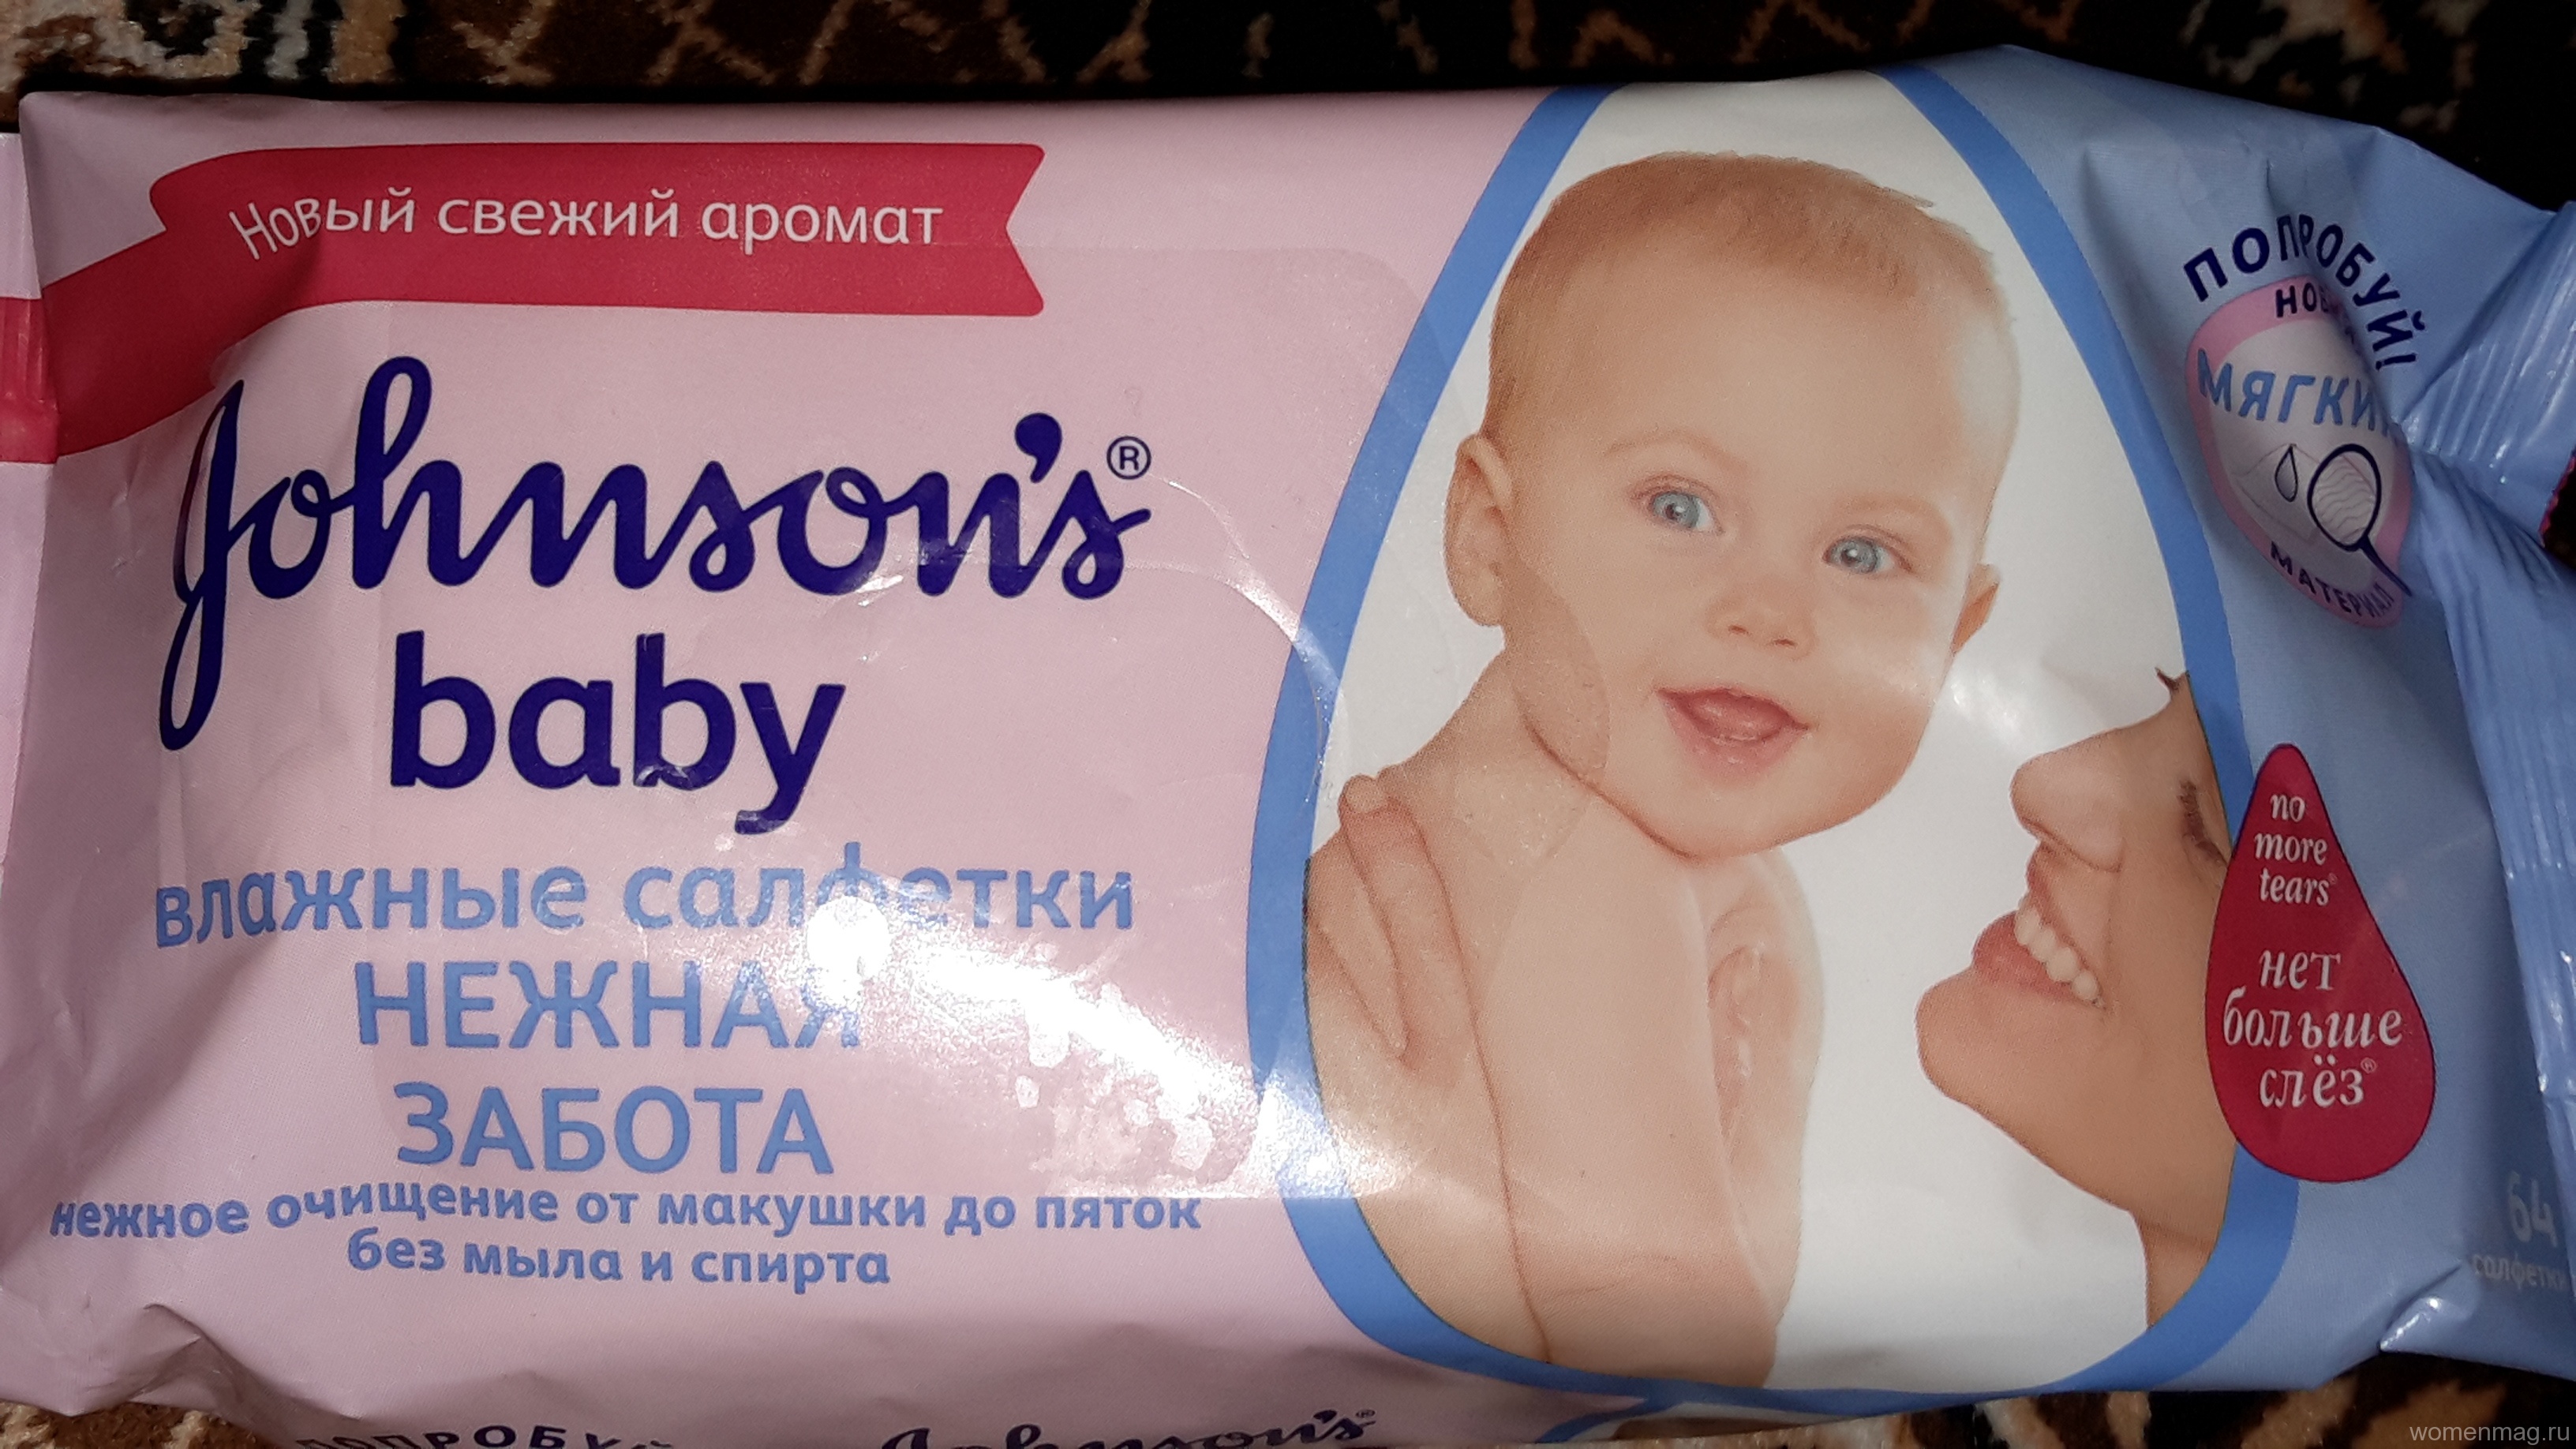 Отзыв на влажные салфетки для детей «Нежная забота» от Johnson’s Baby